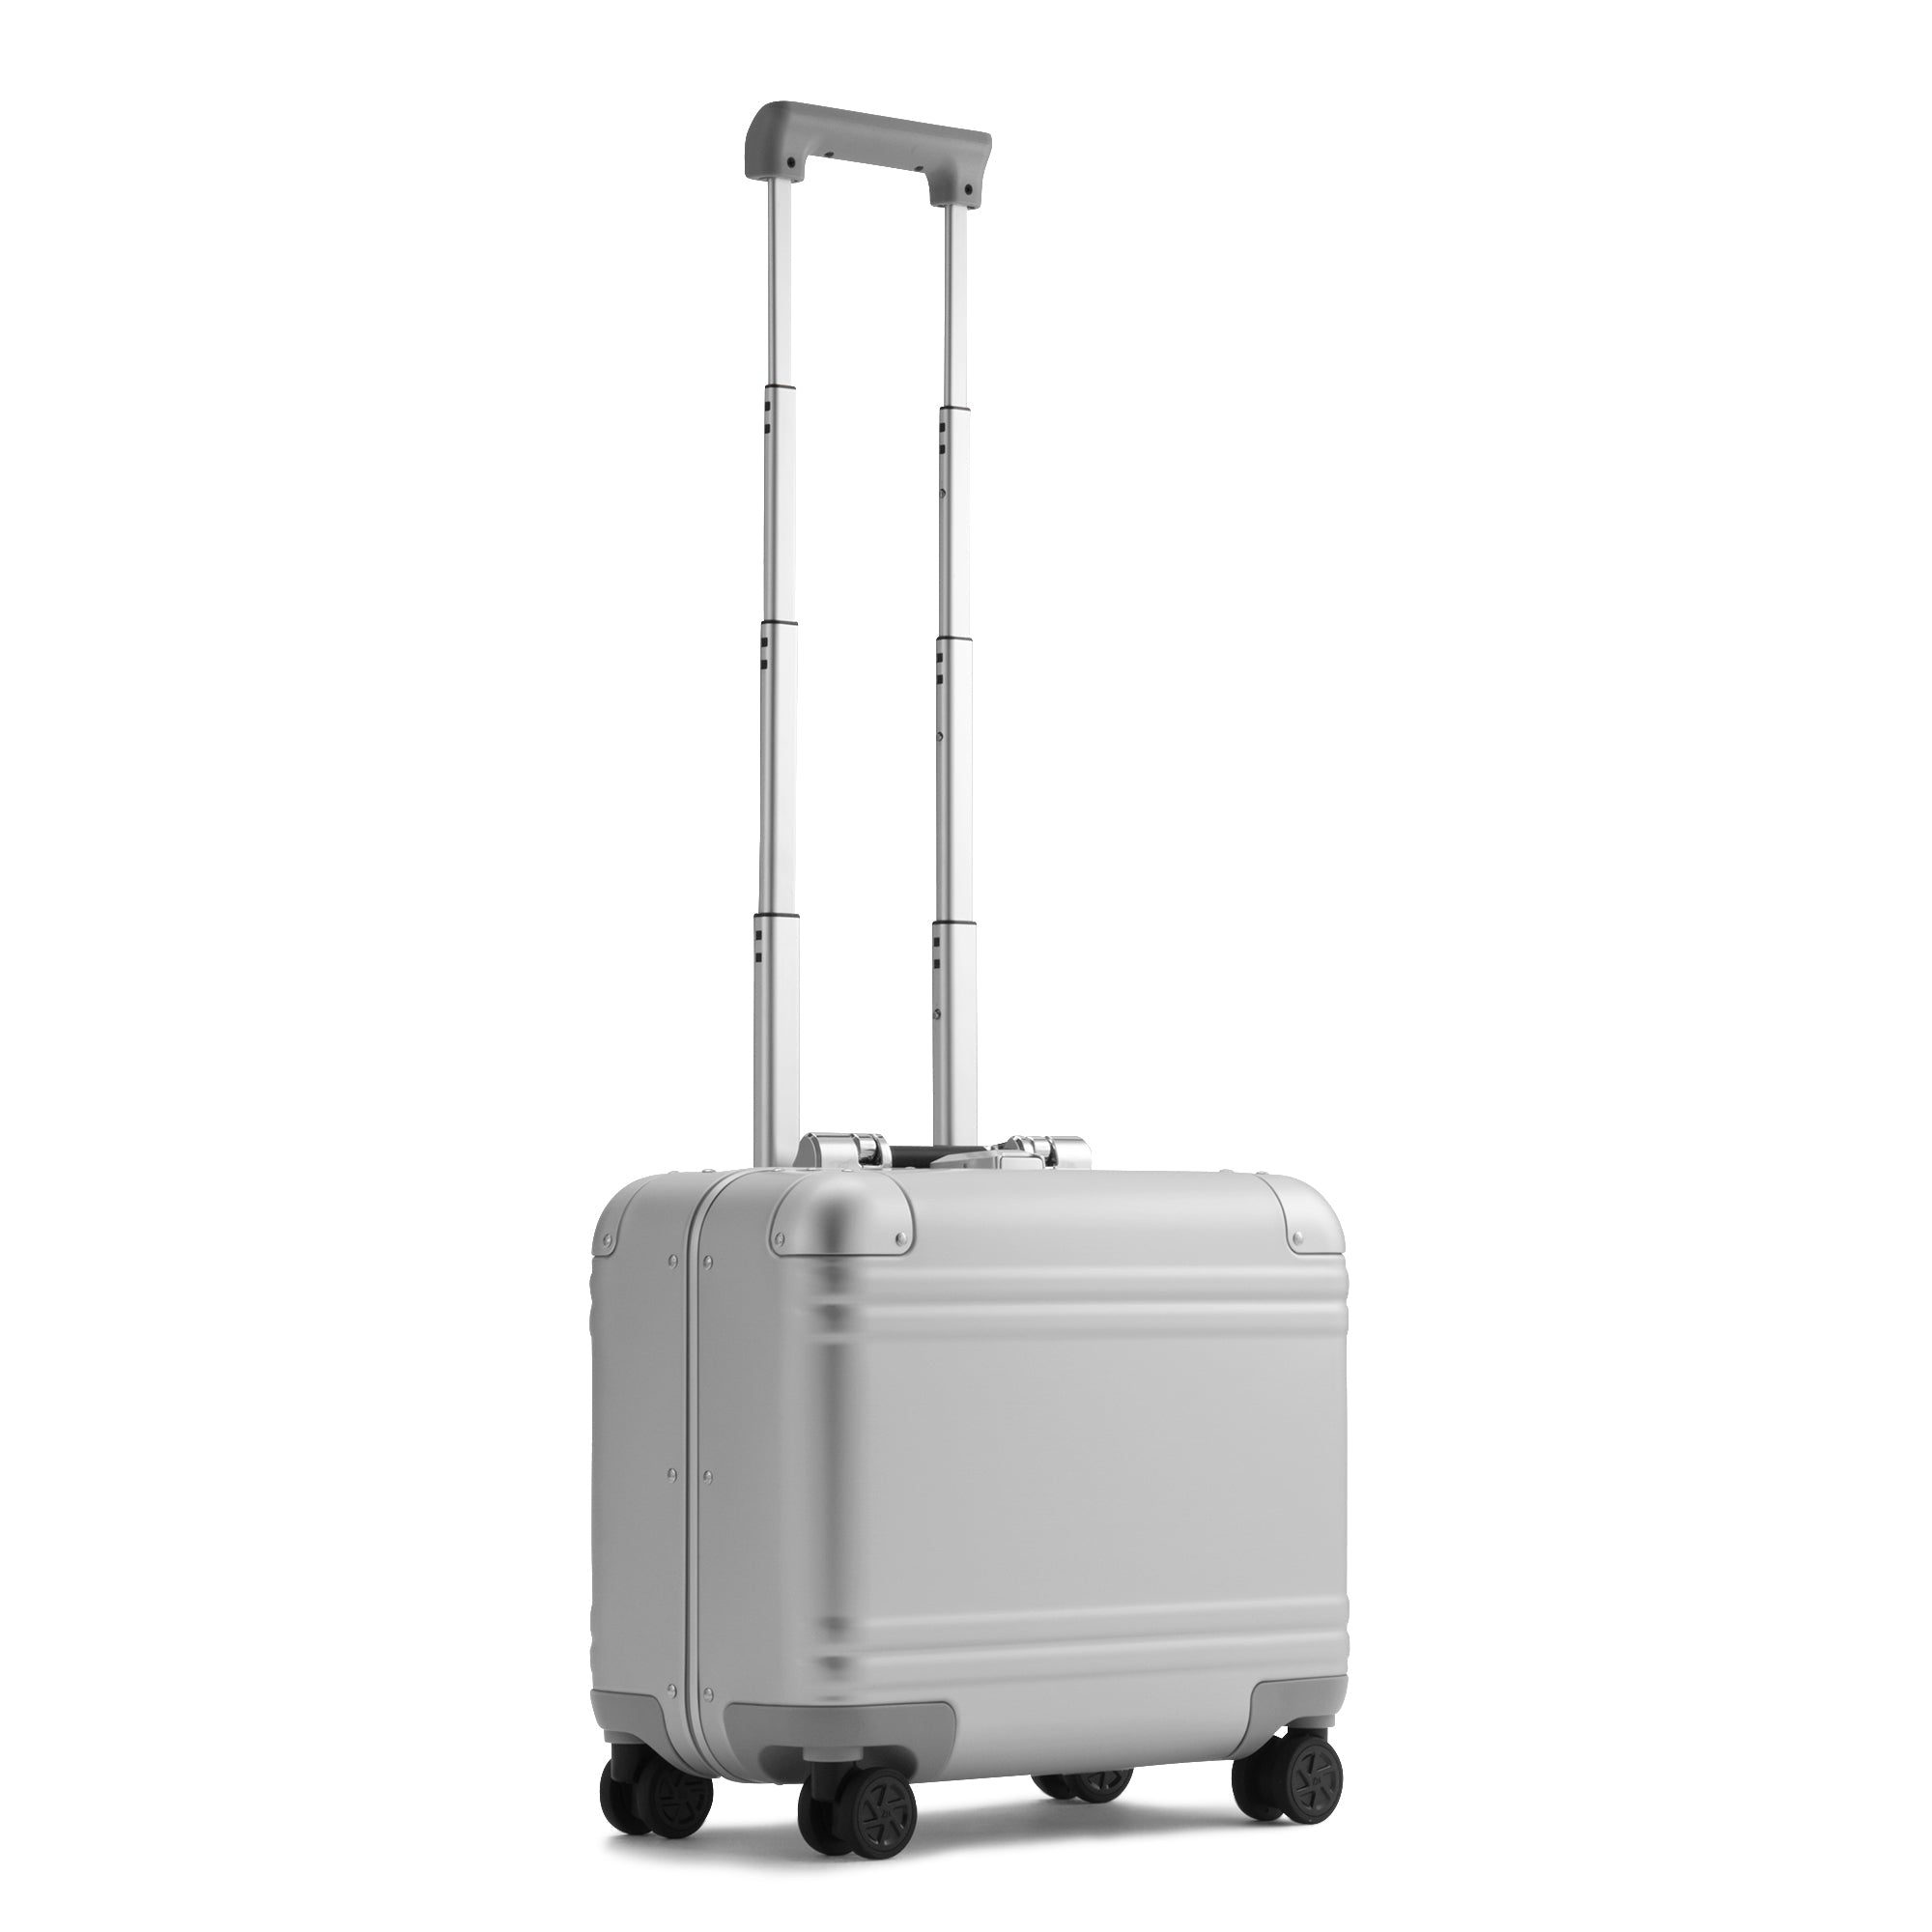 Luxury Carry-On Travel Cases - Zero Halliburton